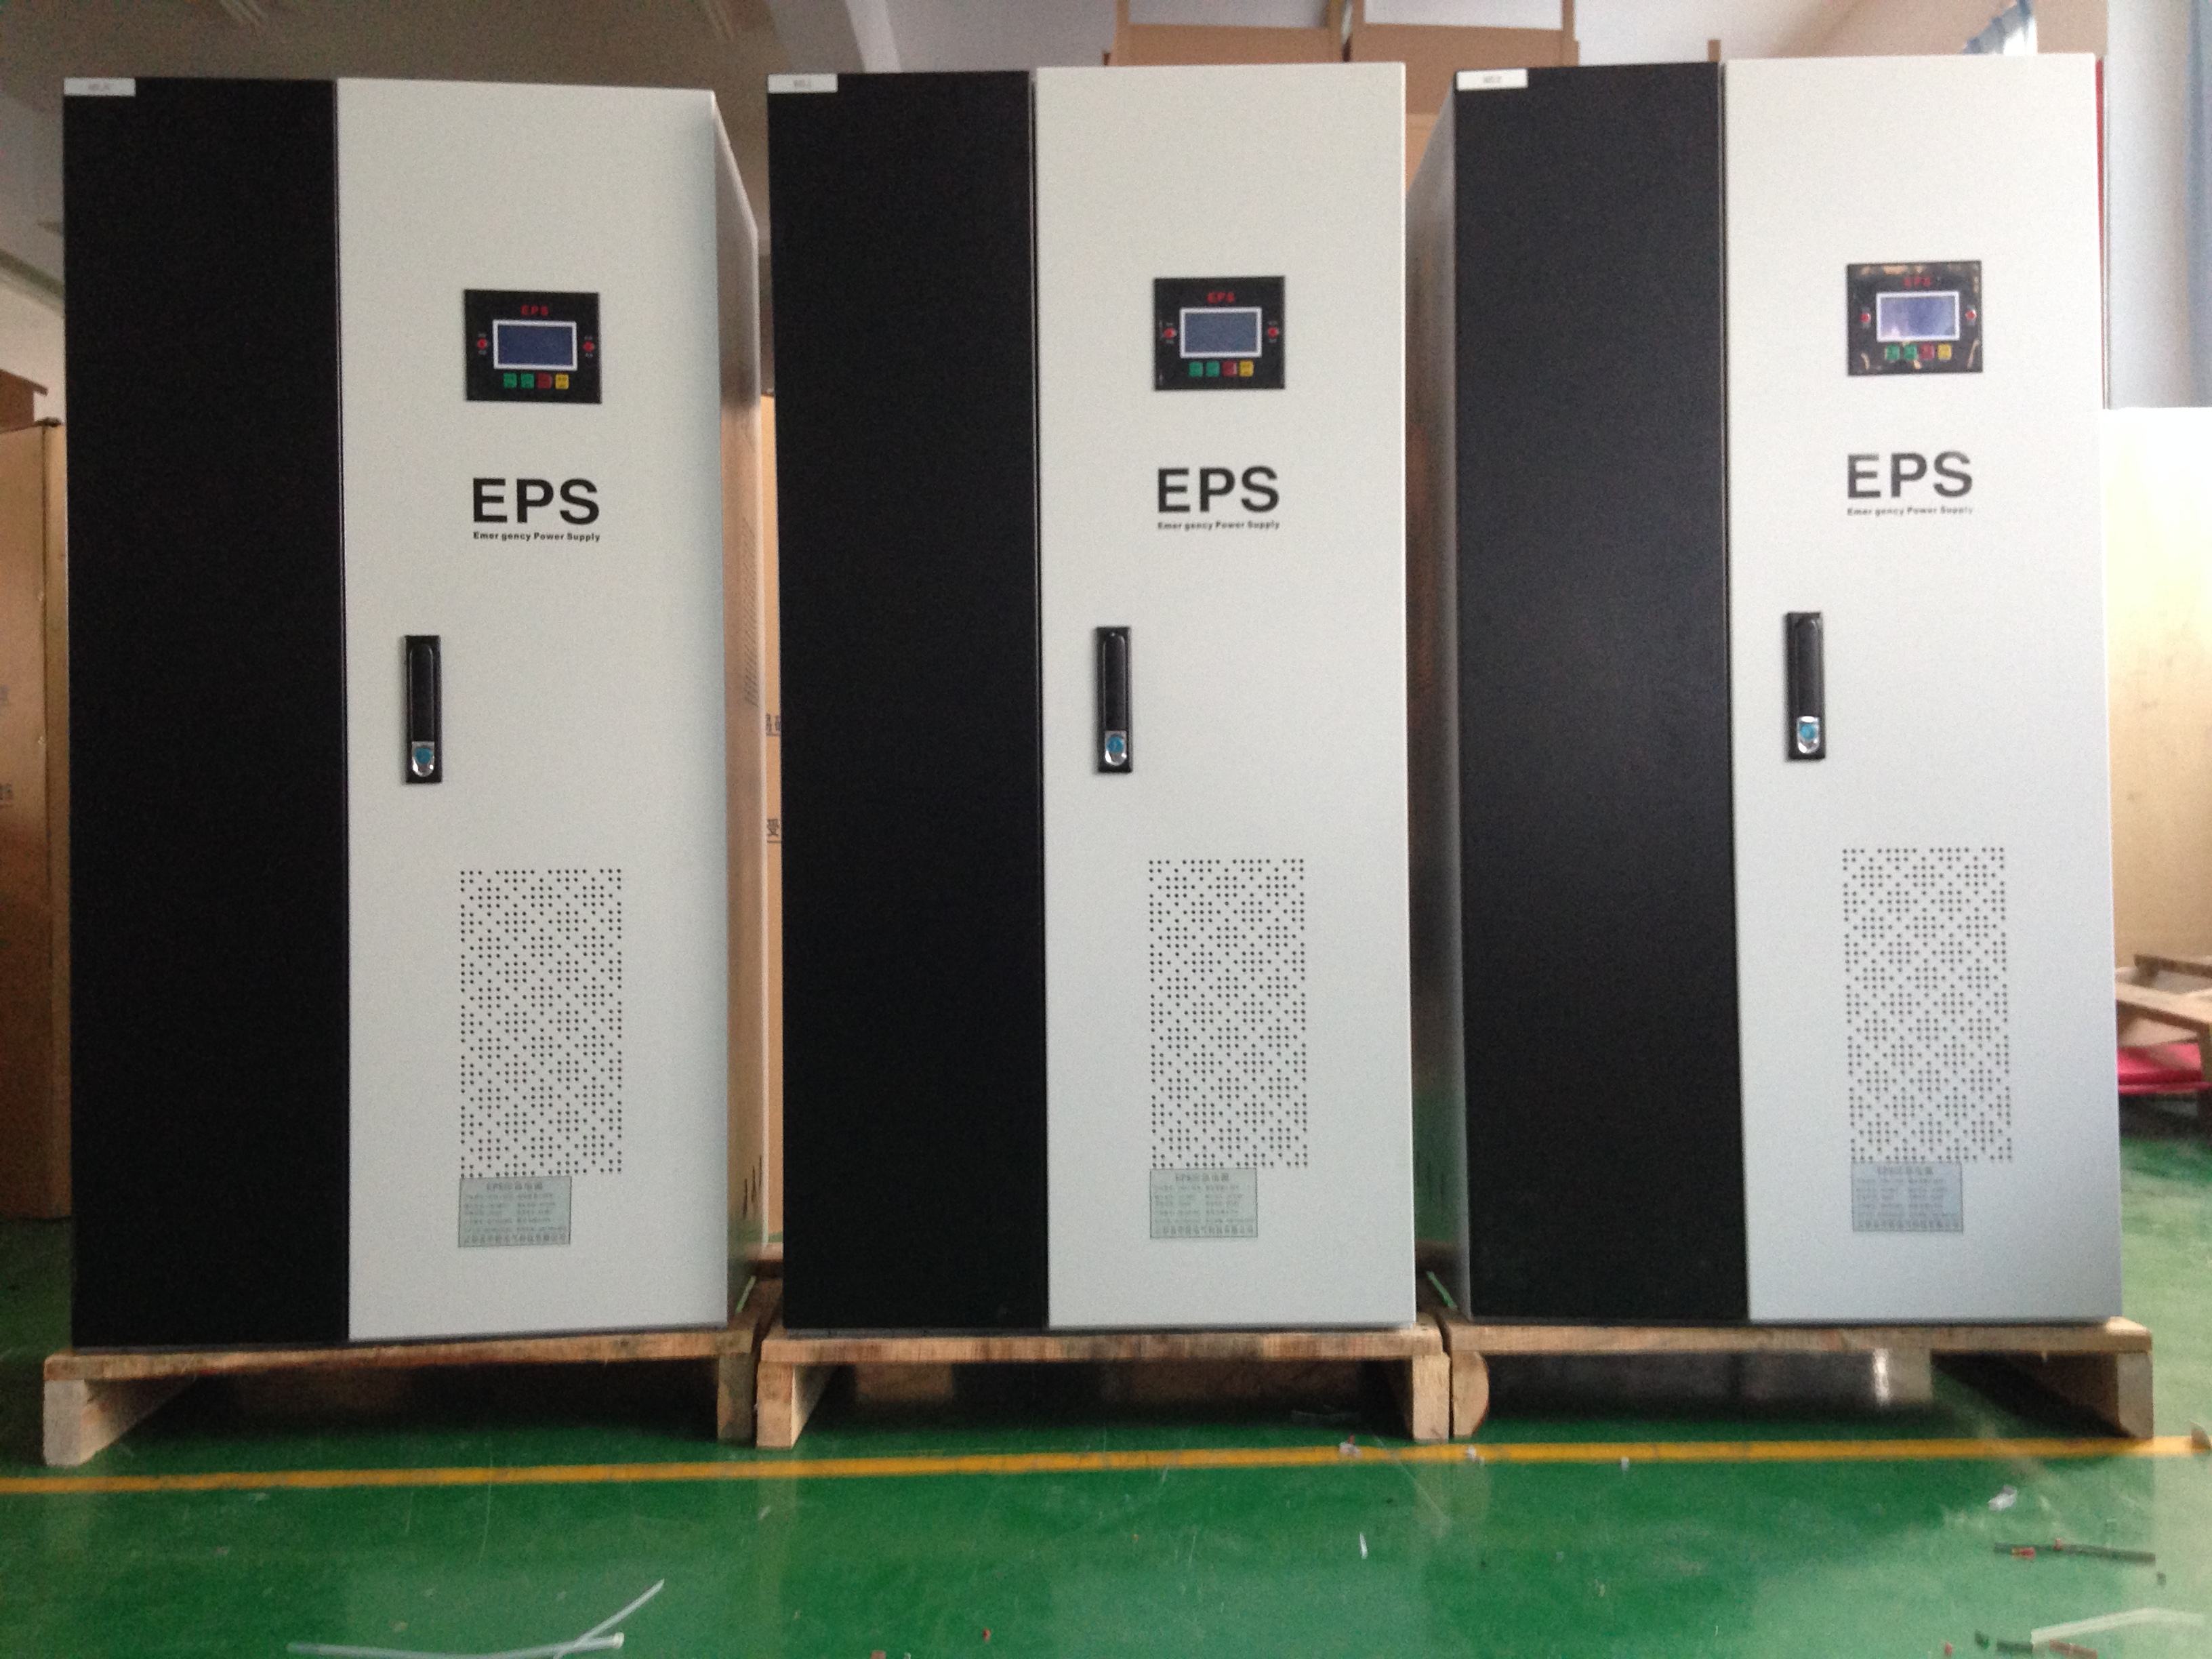 三相动力型EPS消防应急电源EPS-100KW可按图纸定制 CCC认证资质齐全 